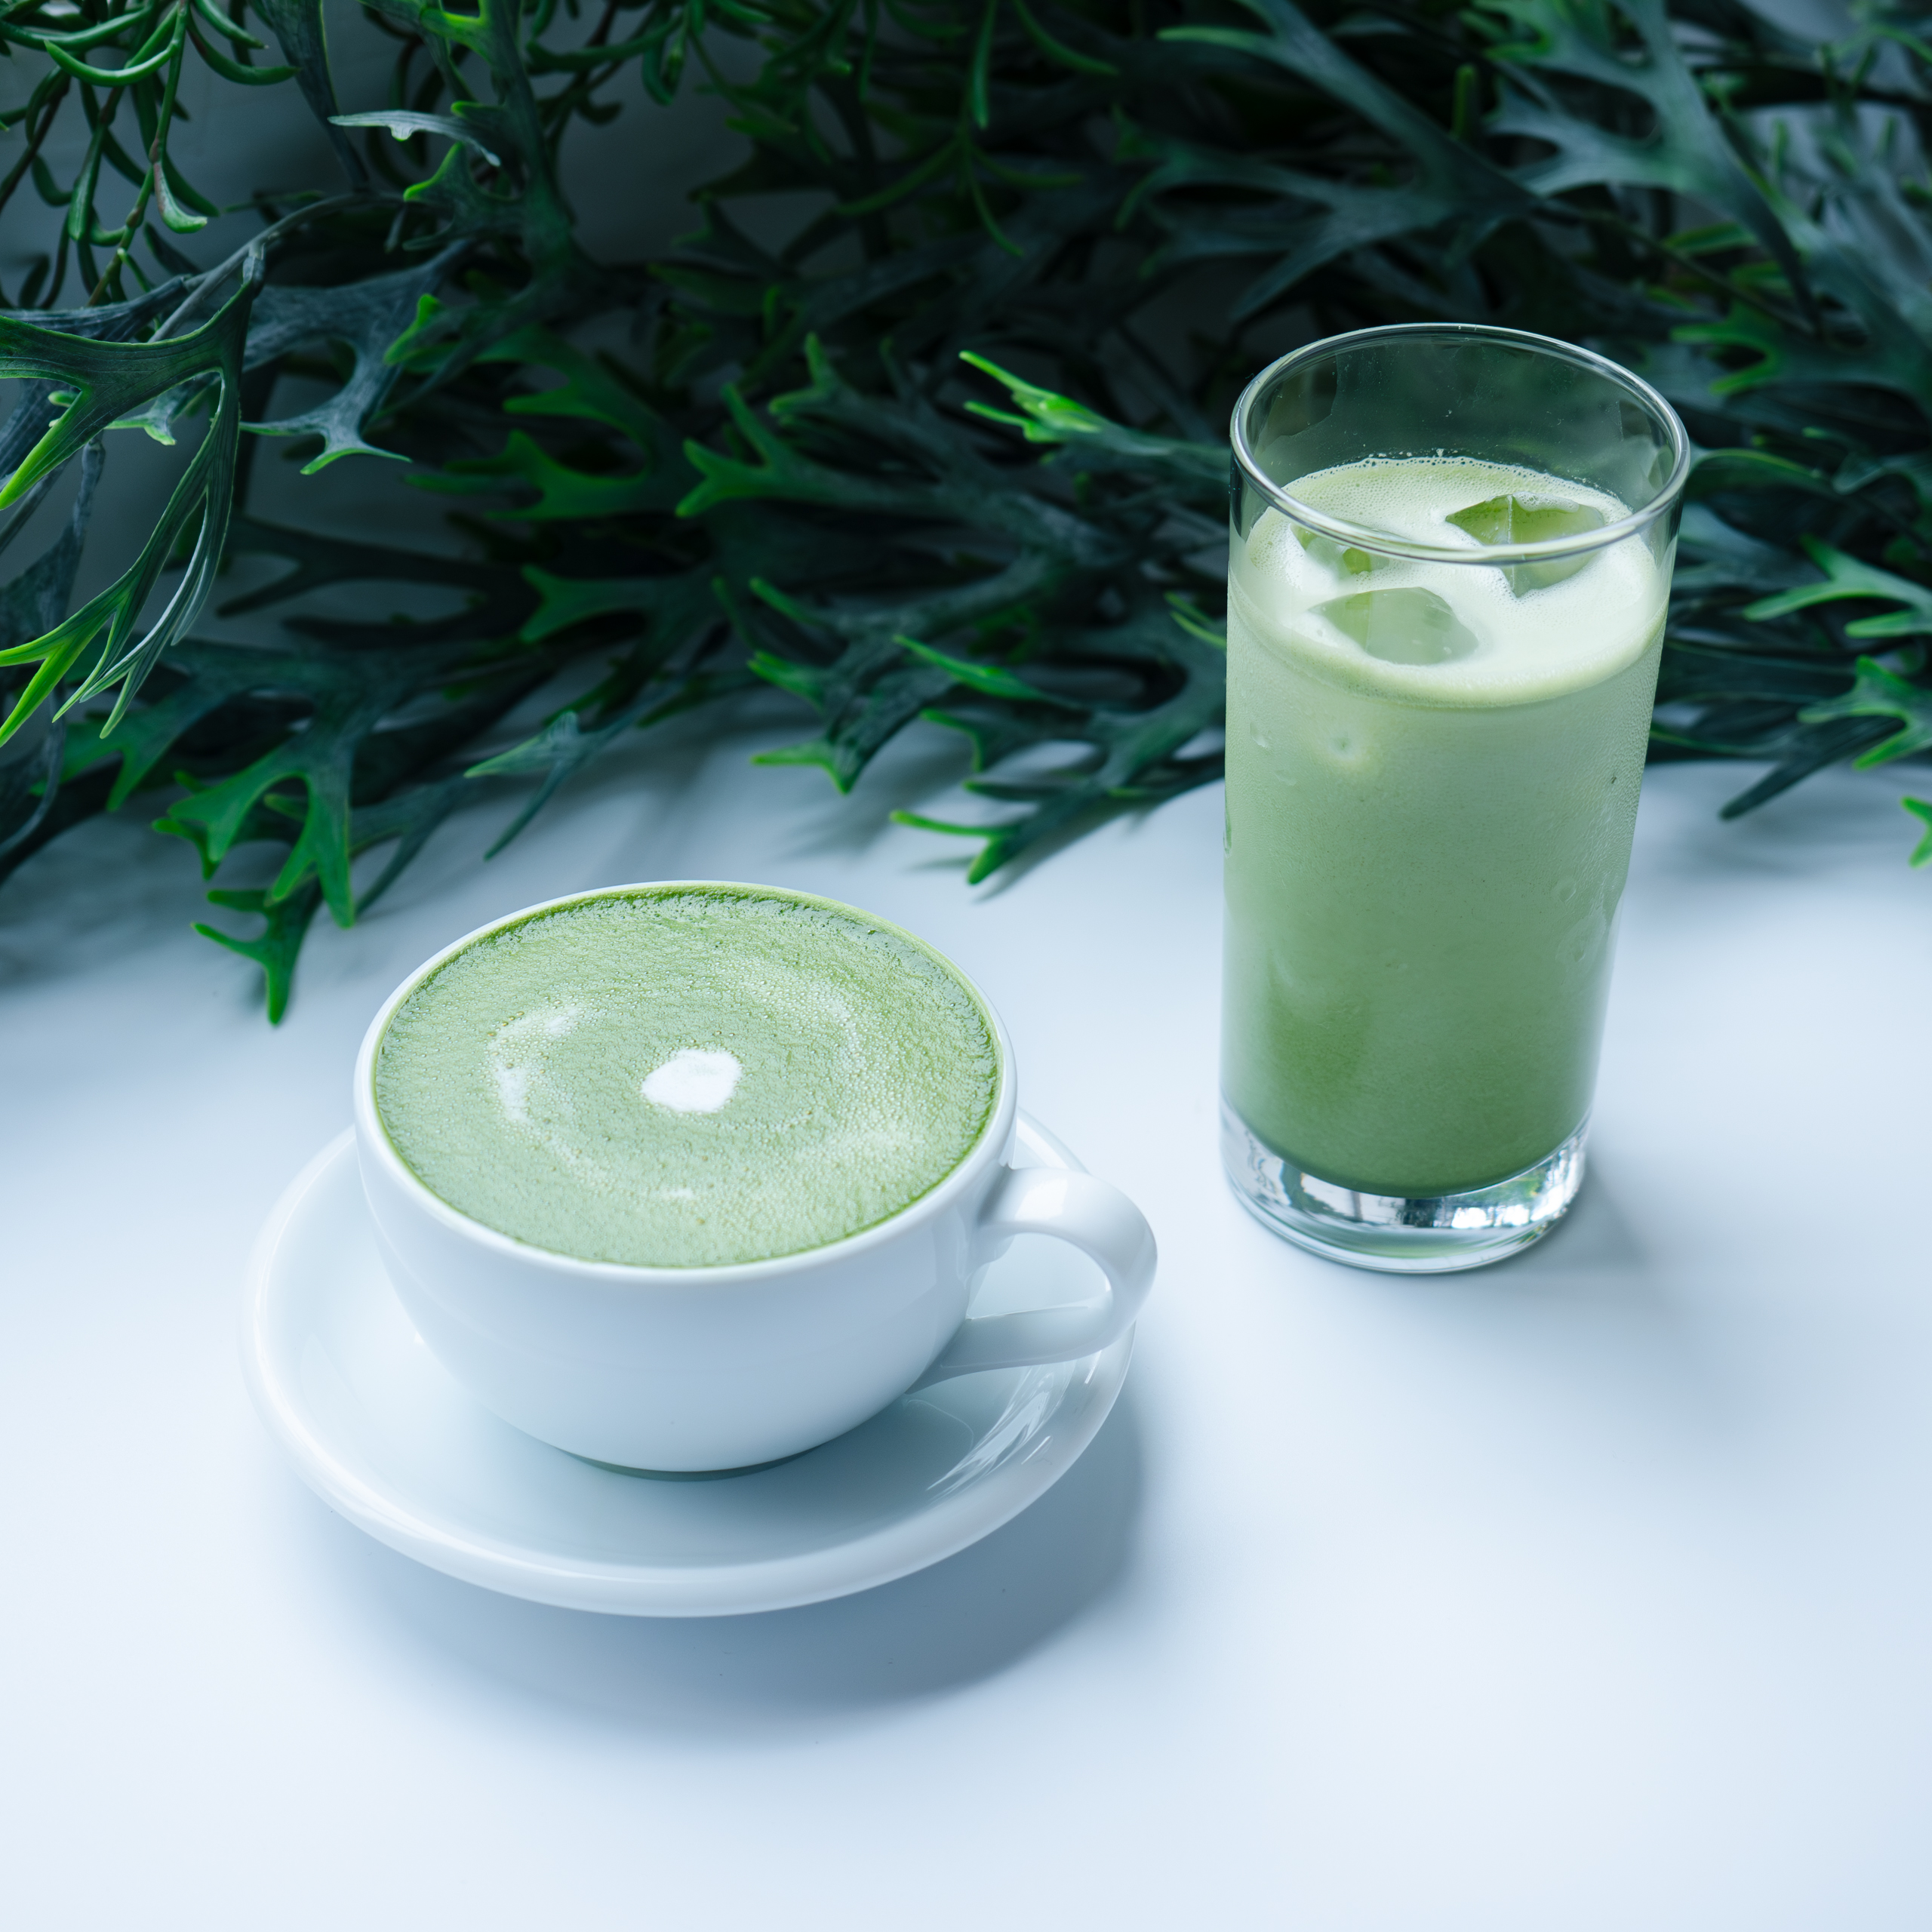 程よい苦味と甘さが魅力の京都宇治抹茶を贅沢に使用した、LILICオススメの抹茶ラテ。
ホットはふわふわなフォームミルクを使用しており、見た目も可愛く、心温まる一杯となっております🥛